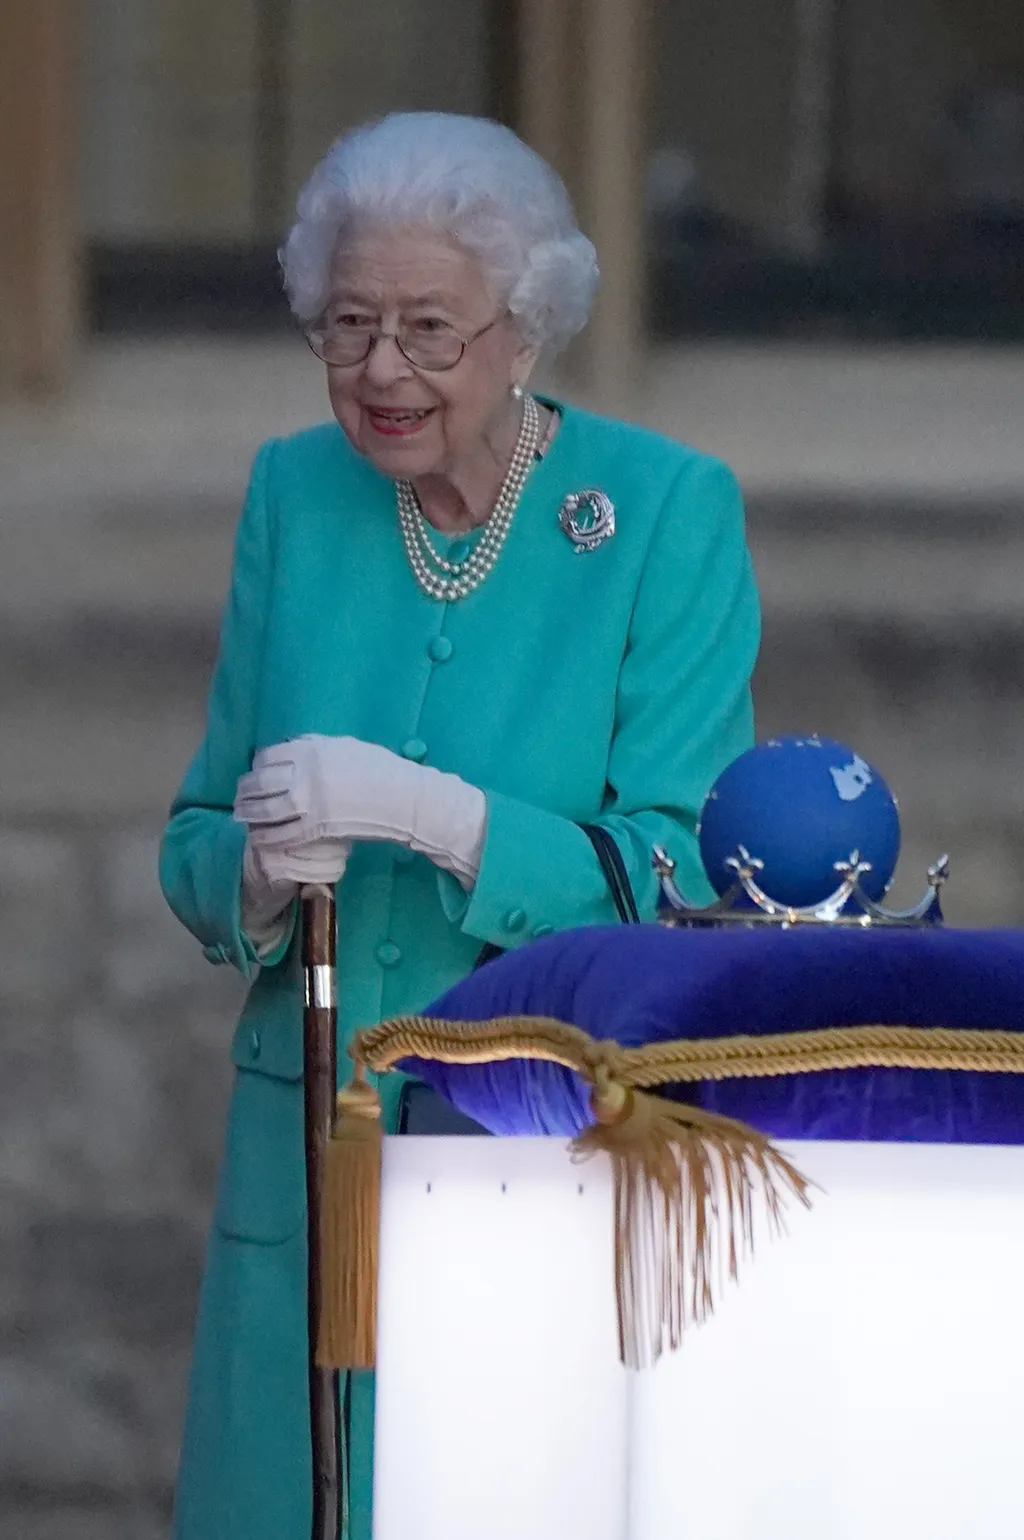 Kezdetét vette Erzsébet királynő platina jubileumi ünnepsége, amely 4 napig tart, Queen Elizabeth, Erzsébet Királynő, Erzsébet, királyi család, királyné, ünneplés, jubileum, évforduló 